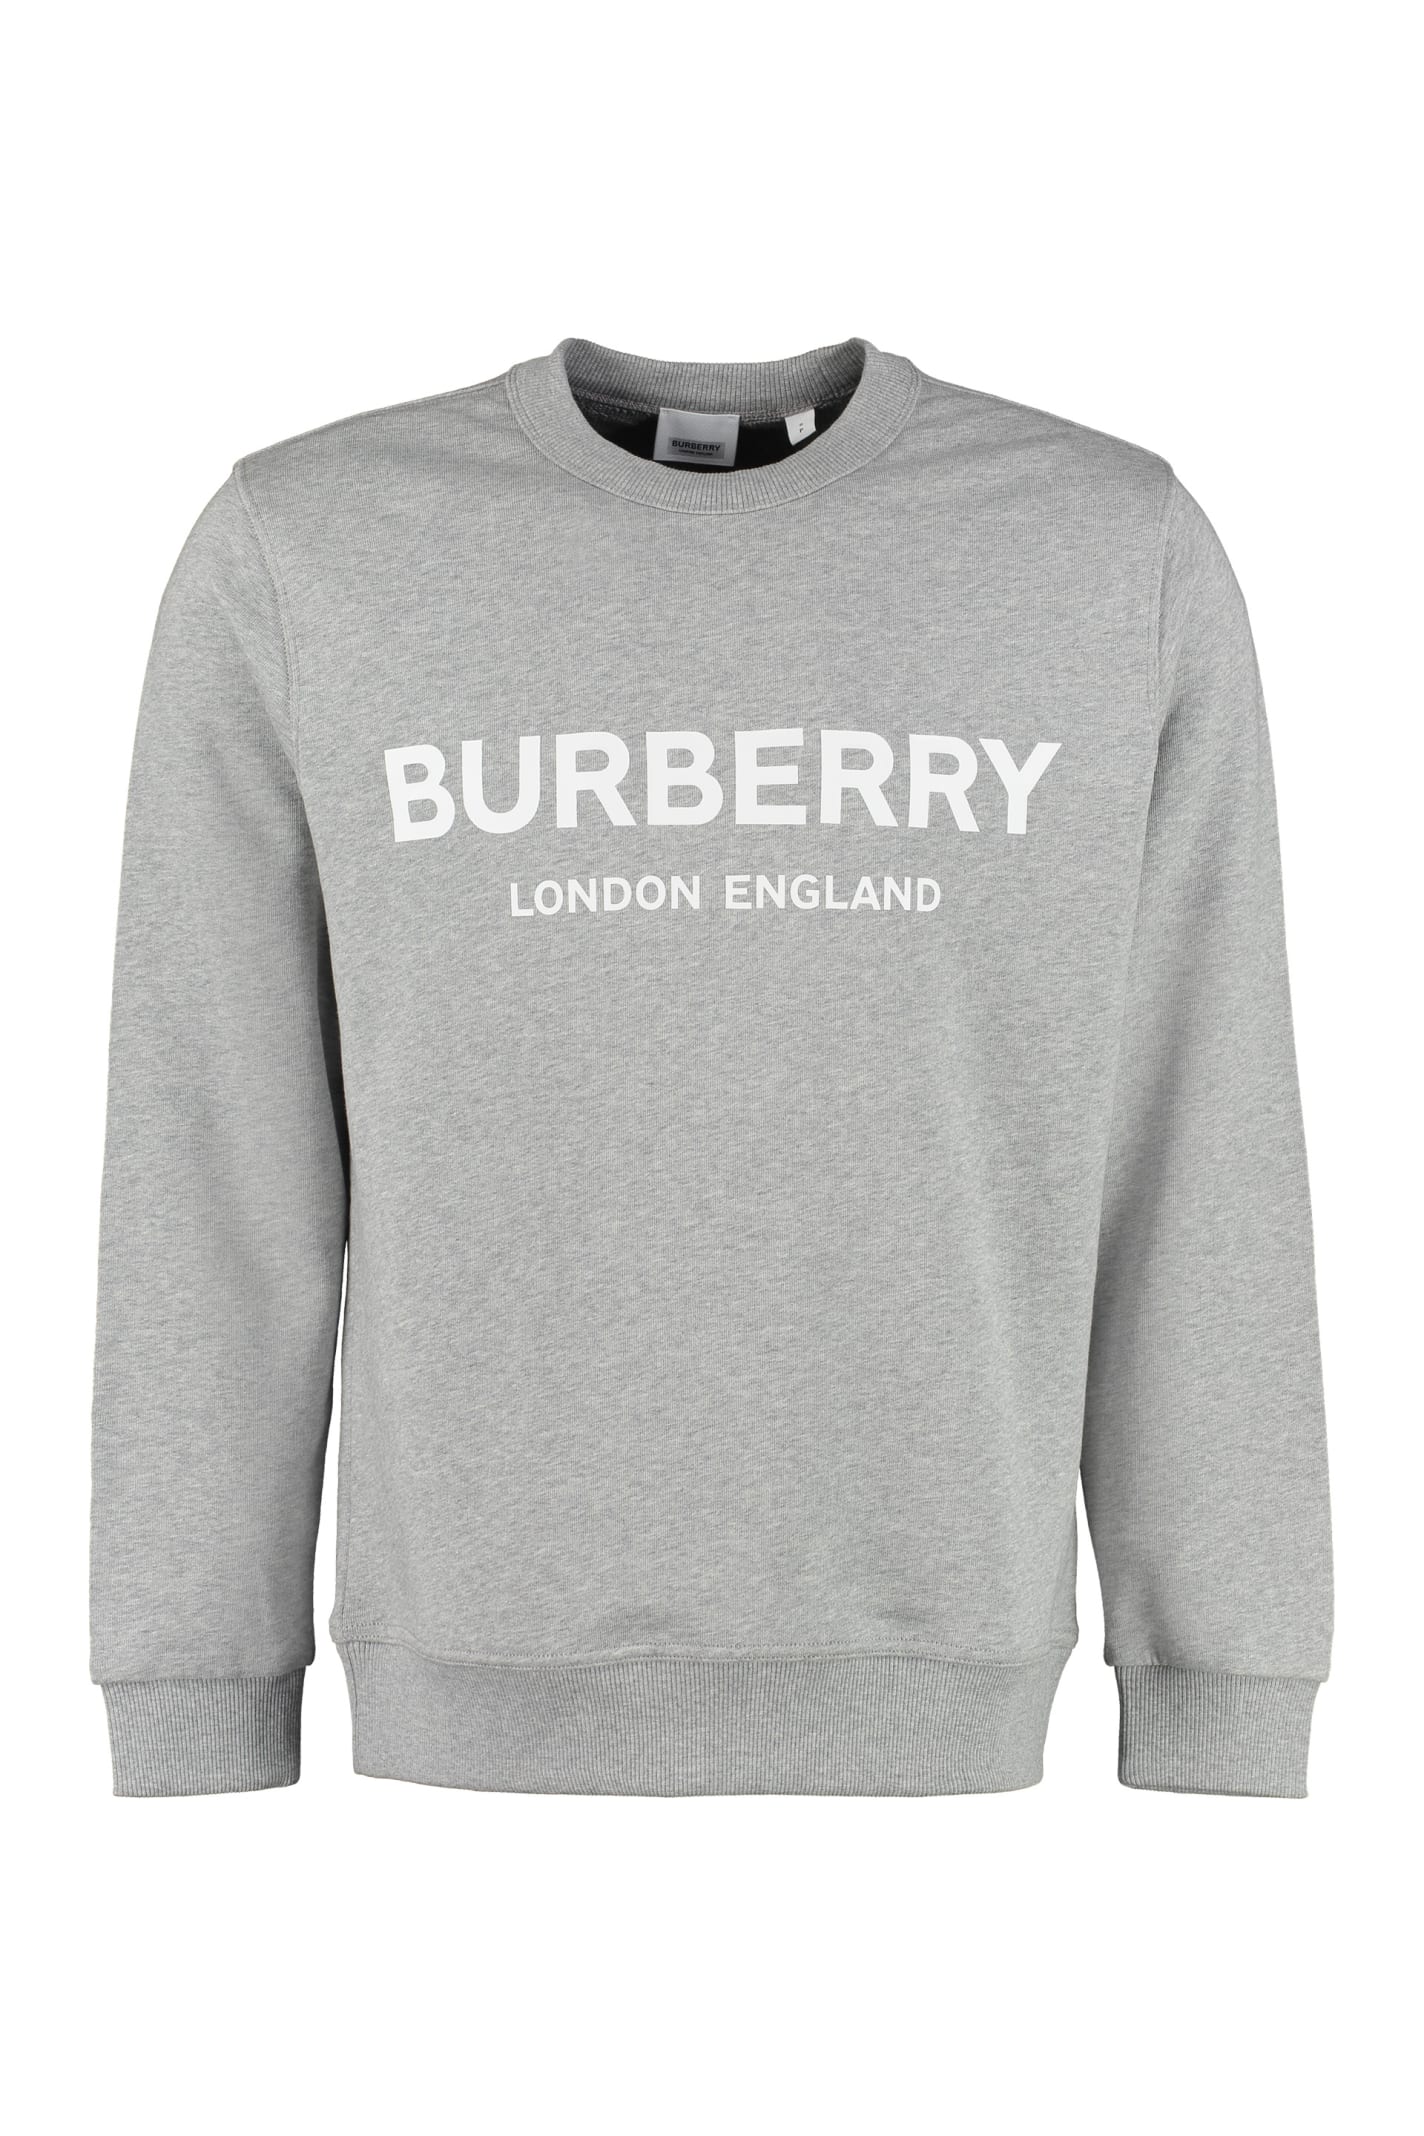 burberry crew neck sweater